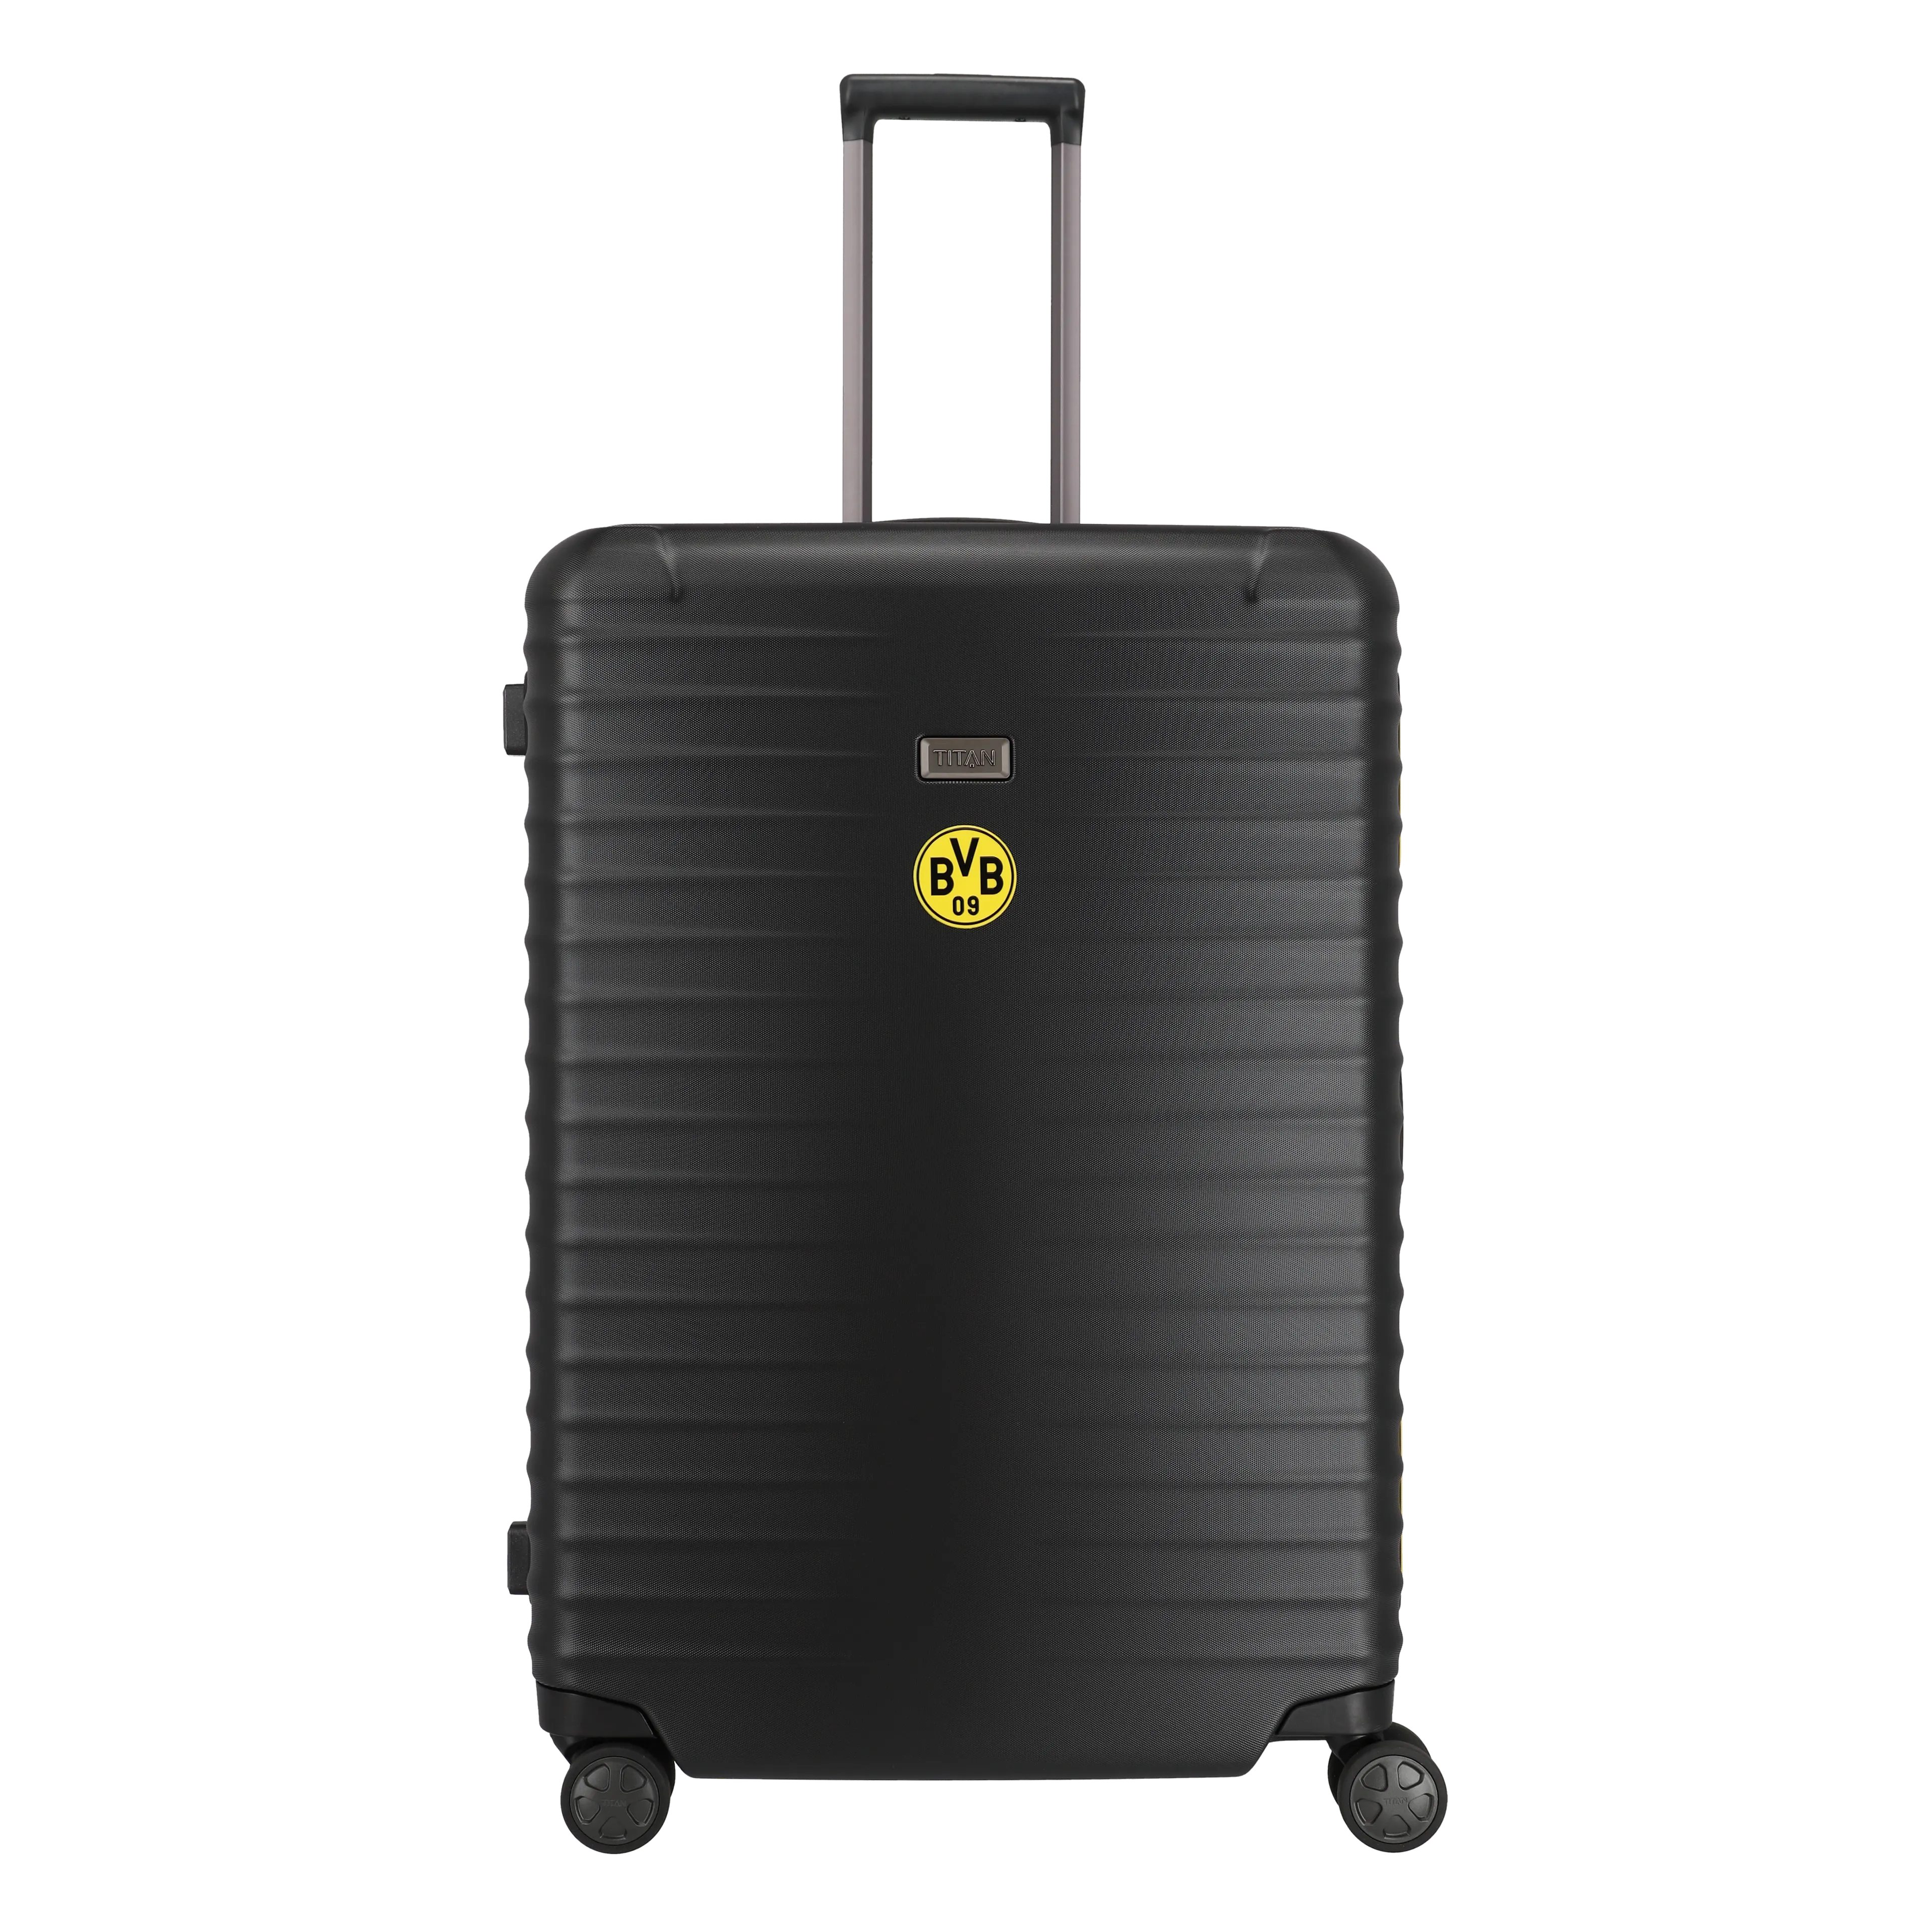 Ein TITAN Koffer der Serie LITRON BVB Edition Frontansicht in schwarz/gelb Größe L 75cm